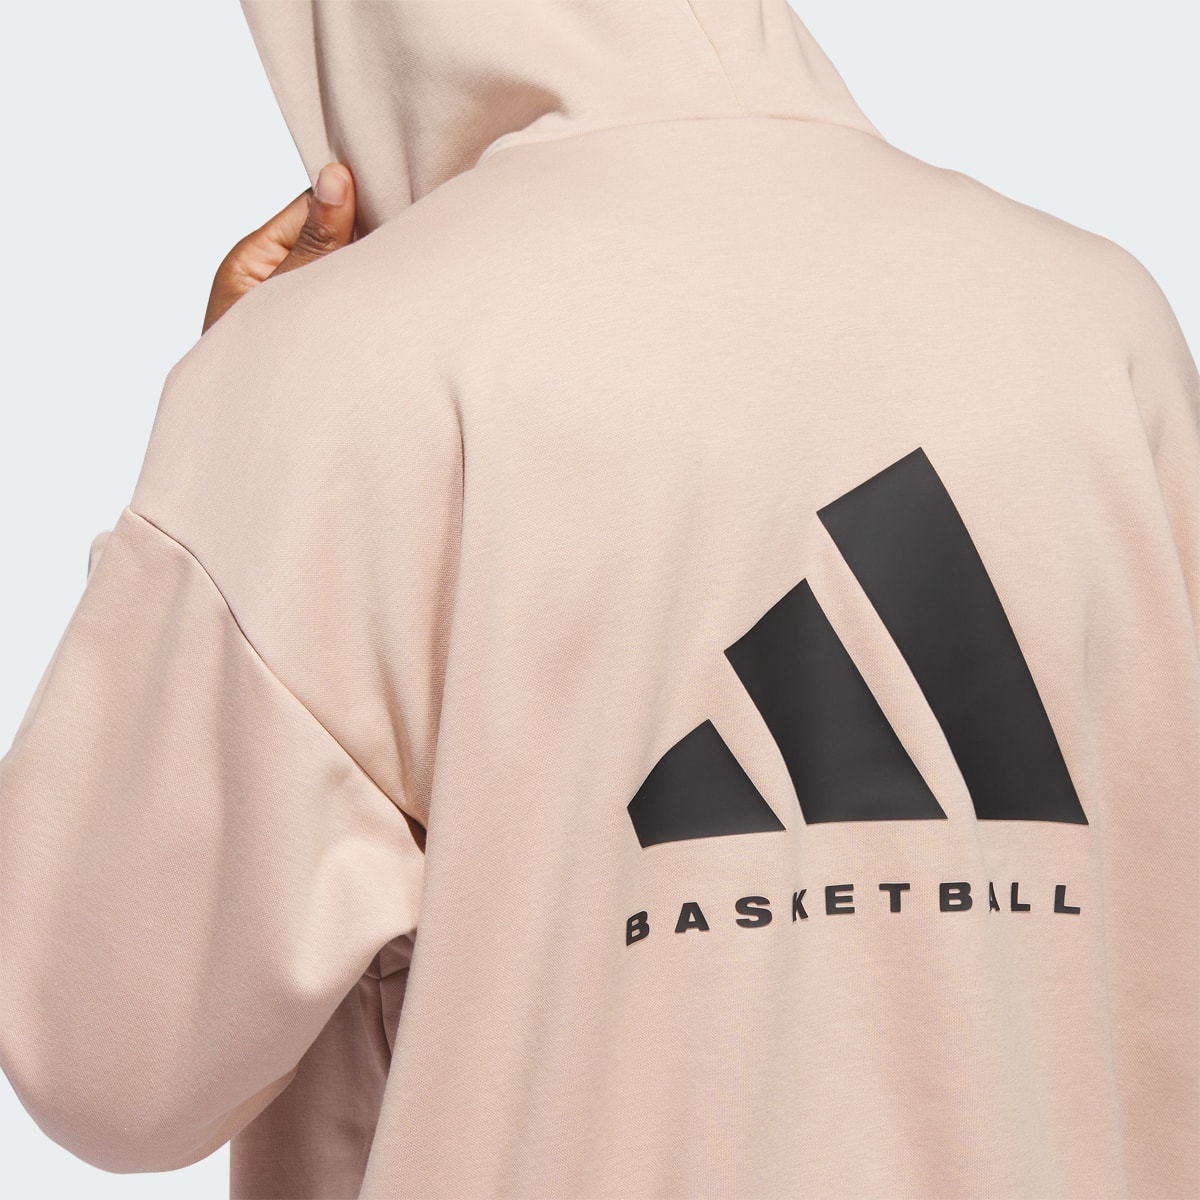 Adidas Basketball Hoodie. 6